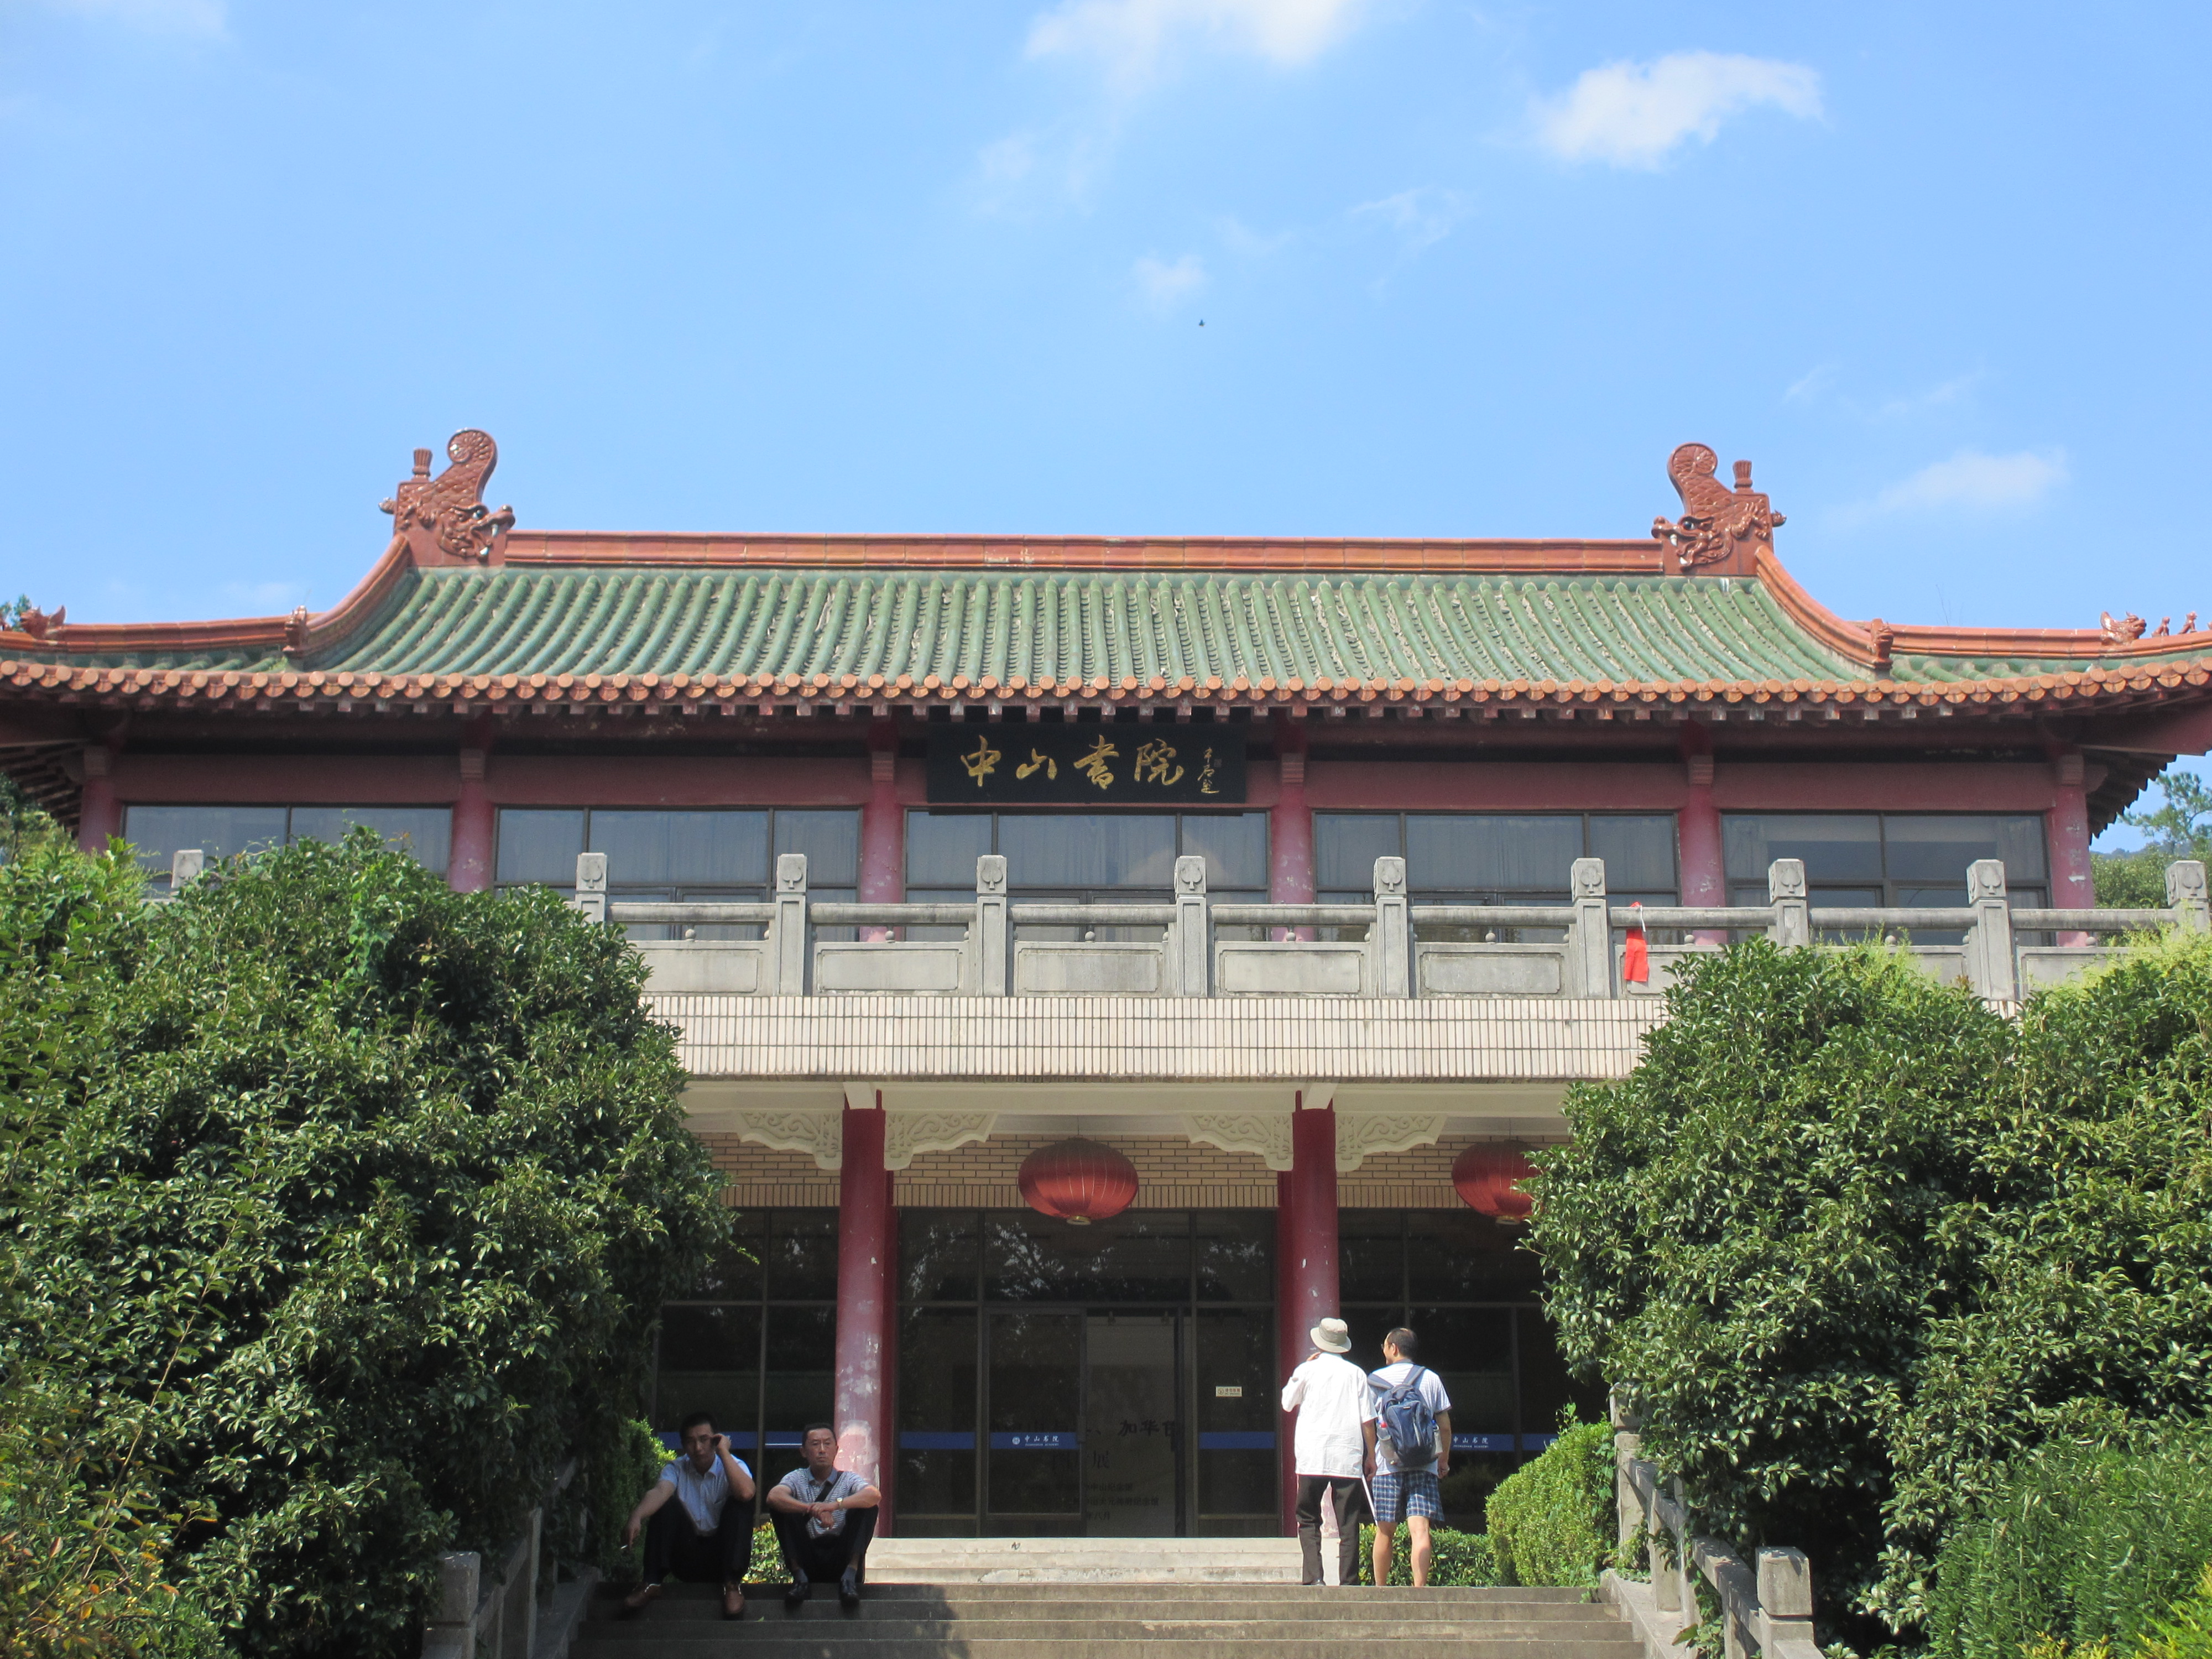 1北京忠良书院风景壁纸,高清图片,壁纸,自然风景-桌面城市